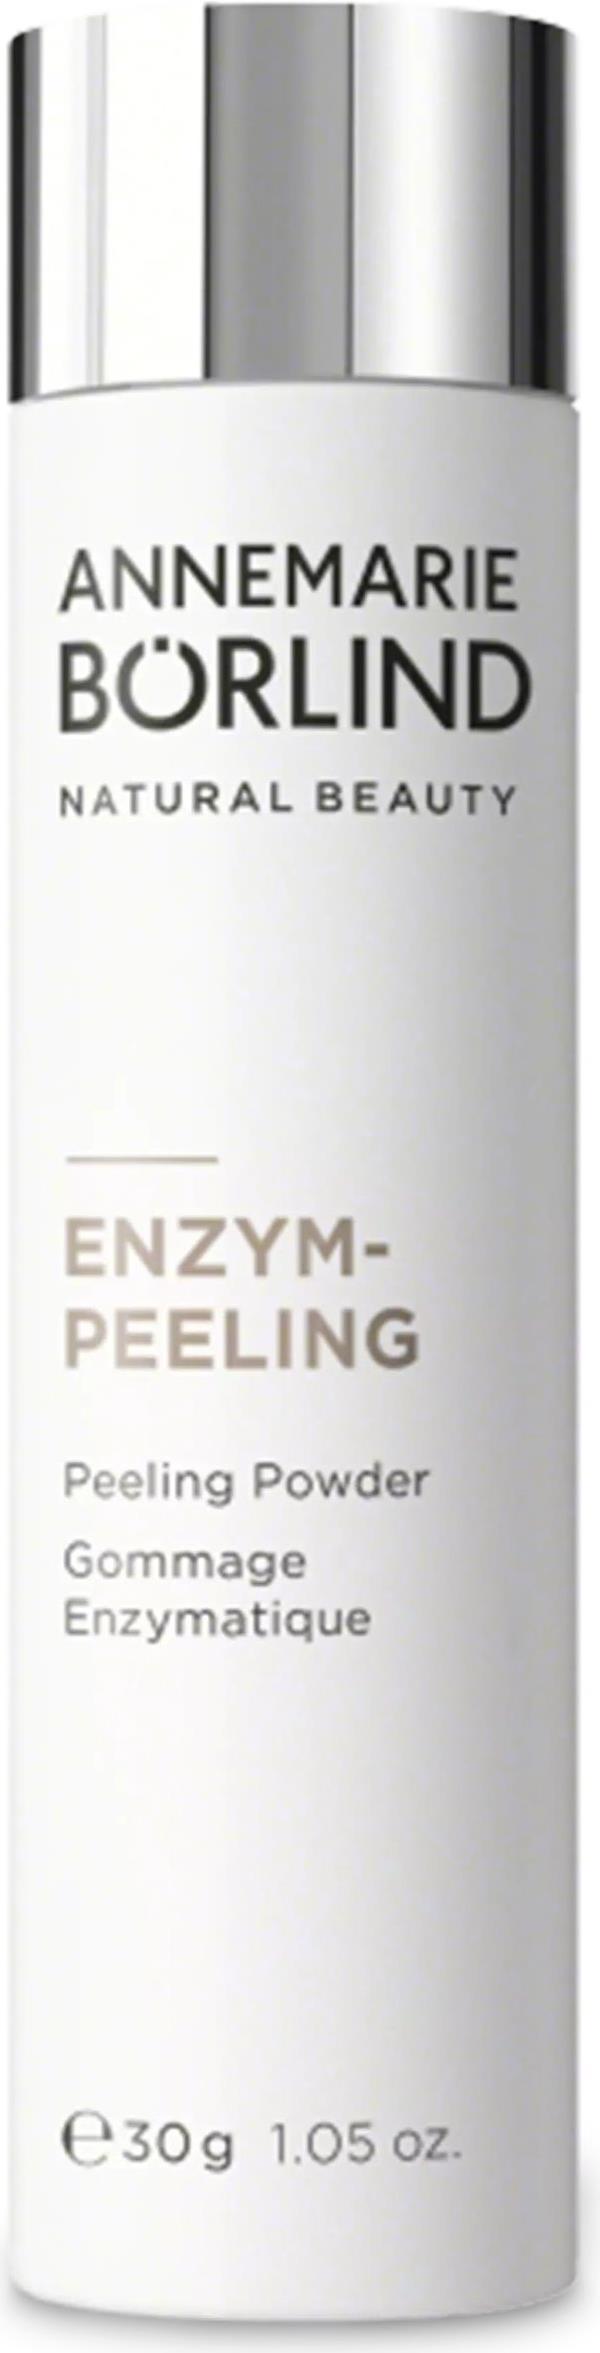 Annemarie Börlind Enzym-Peeling (Peeling) kaufen